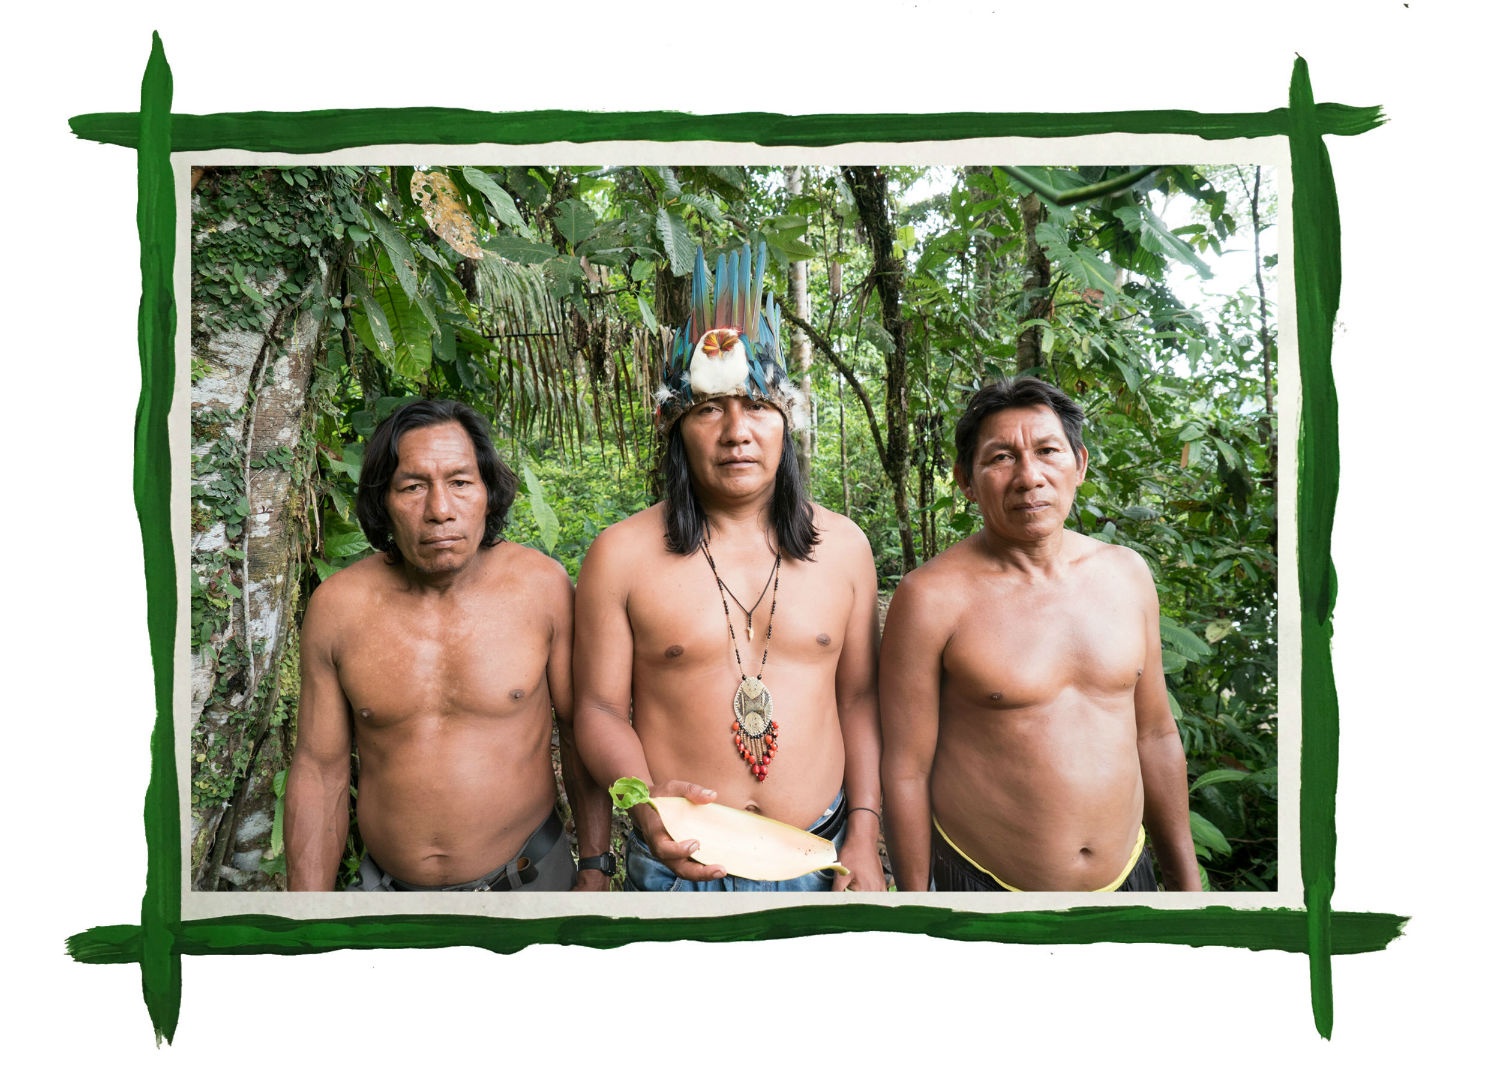 Shaman, Leader, and Indigenous and Natural Rights warrior Manari Ushigua (center) with Sapara tribesman Francisco and Felipe Ushigua. Photo credit: Ben Roffee.